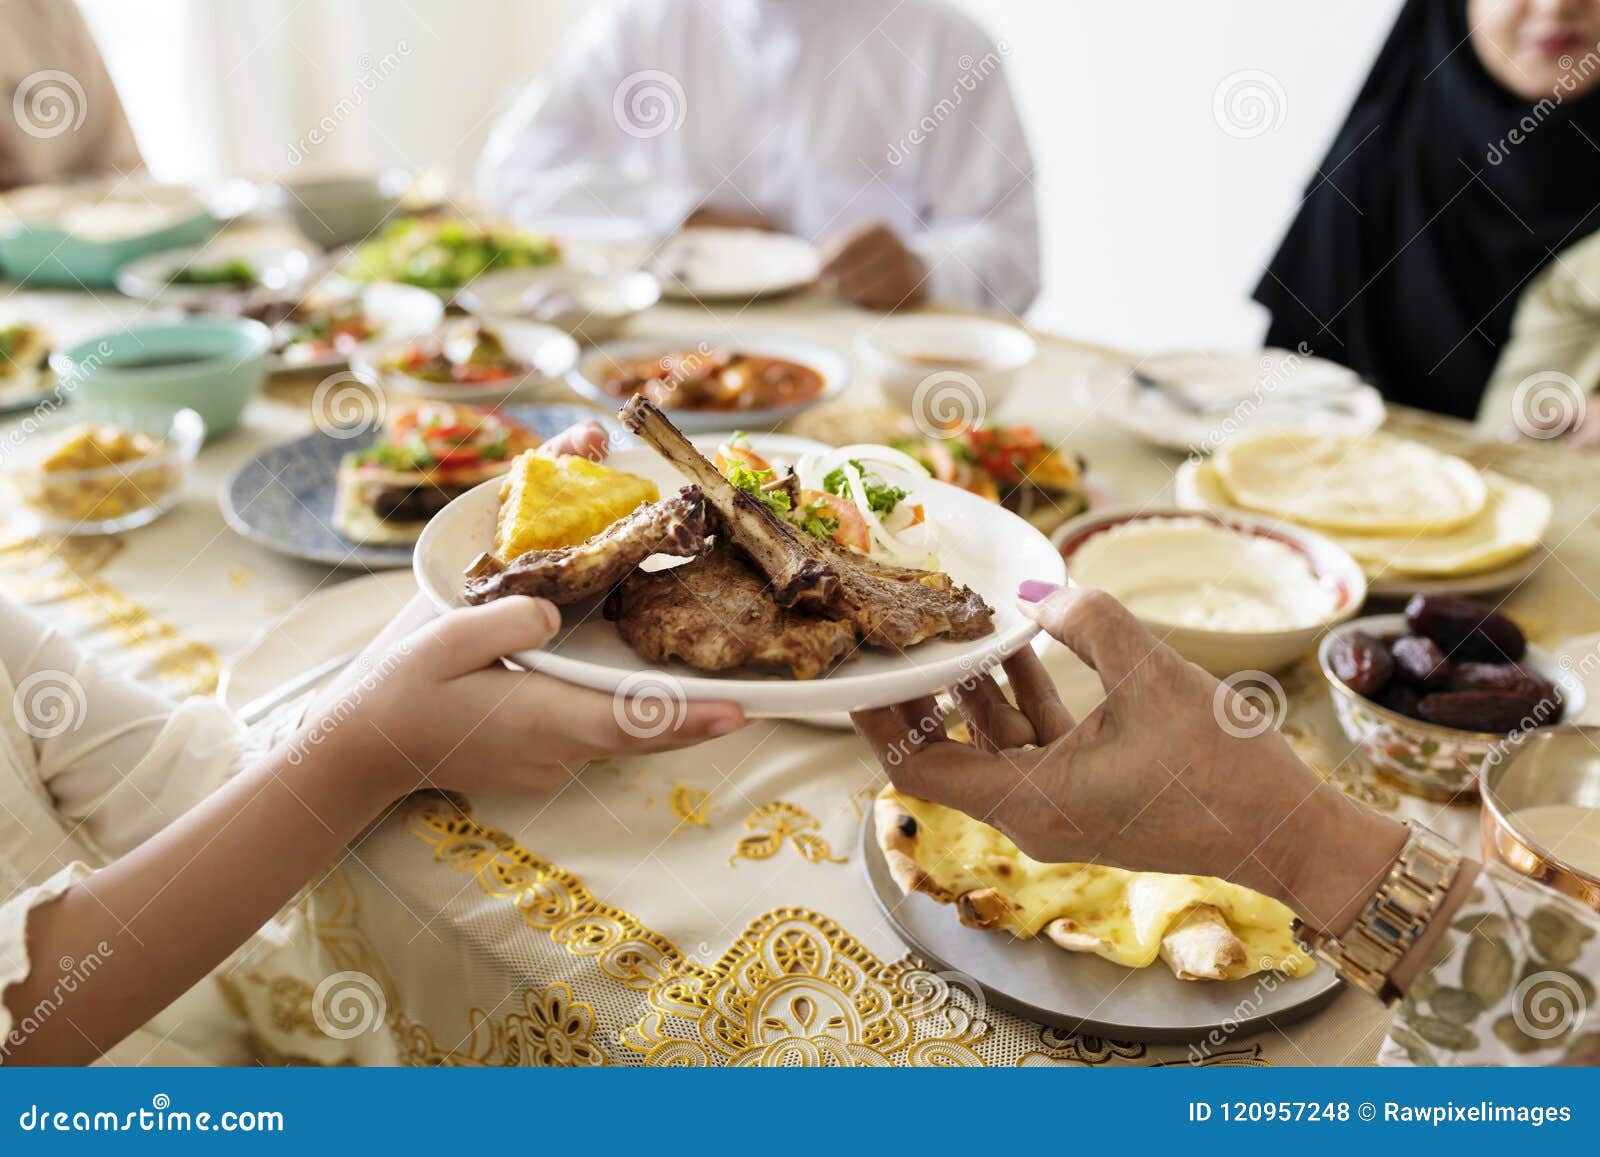 muslim family having a ramadan feast